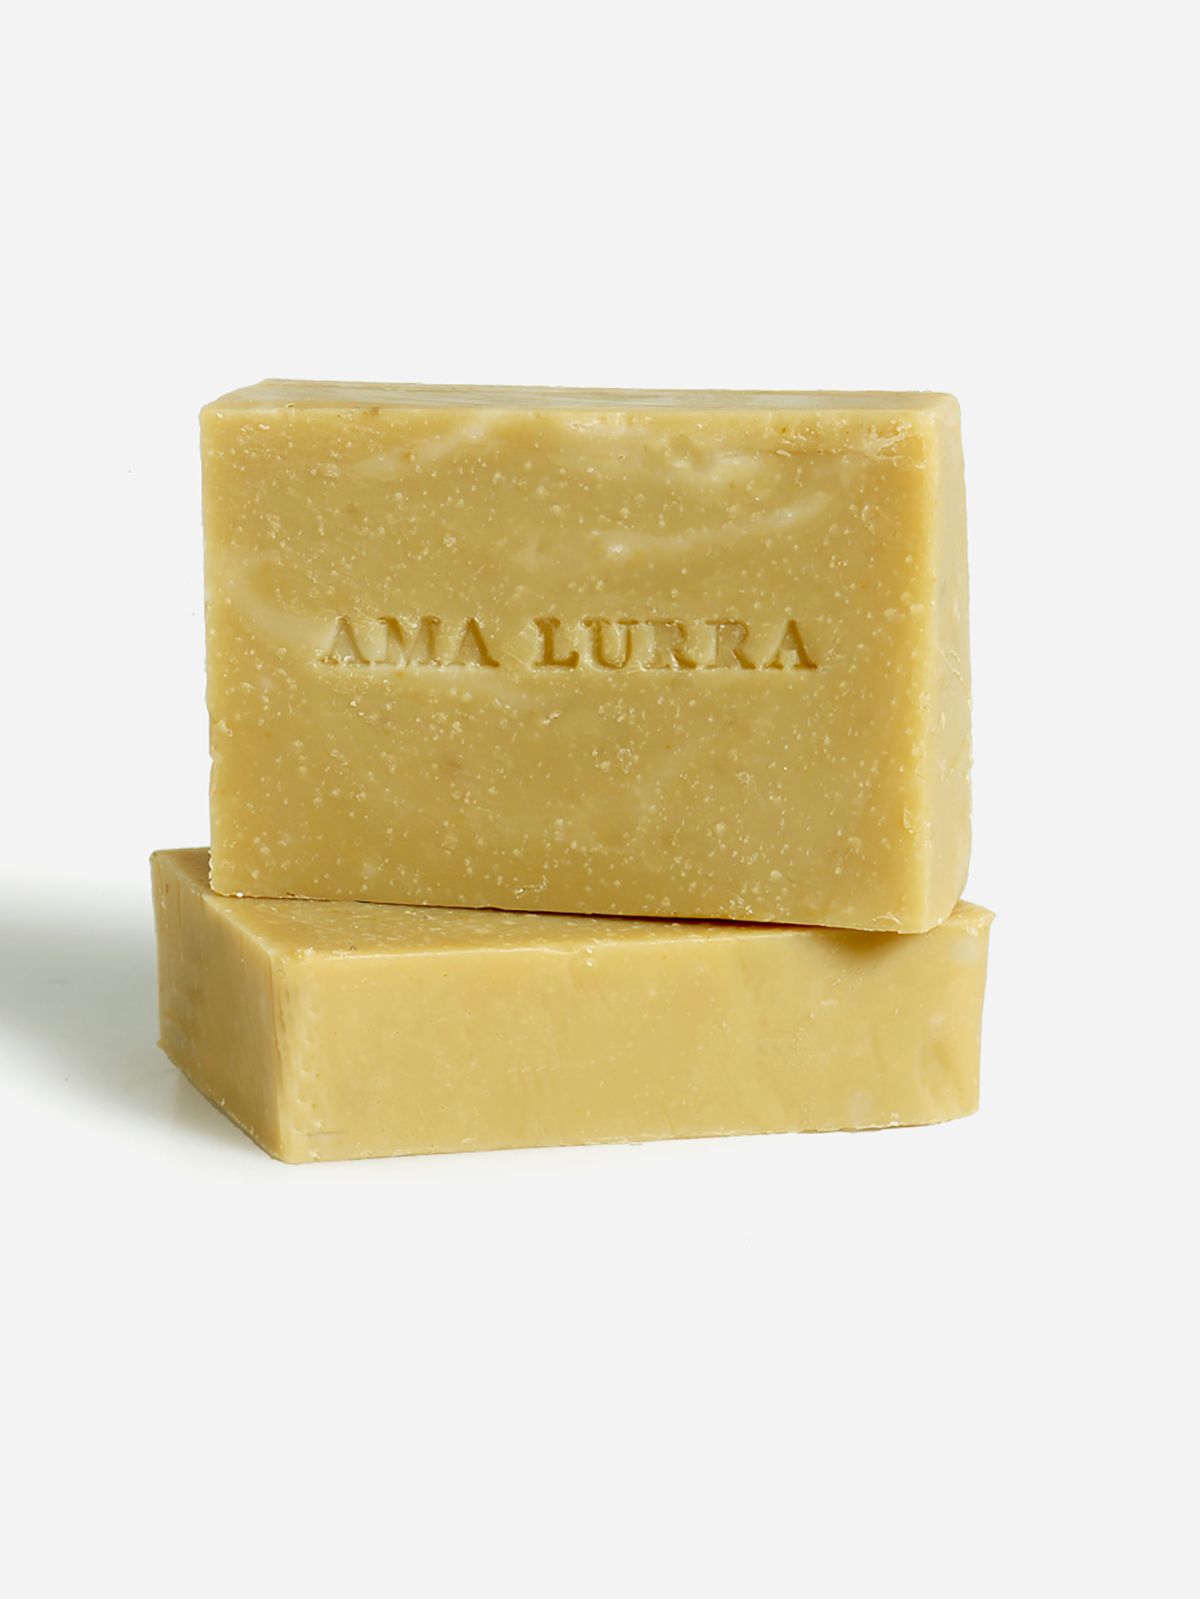  סבון טבעי אדמה צהובה Golden Eartd Mineral Soap של AMA LURRA